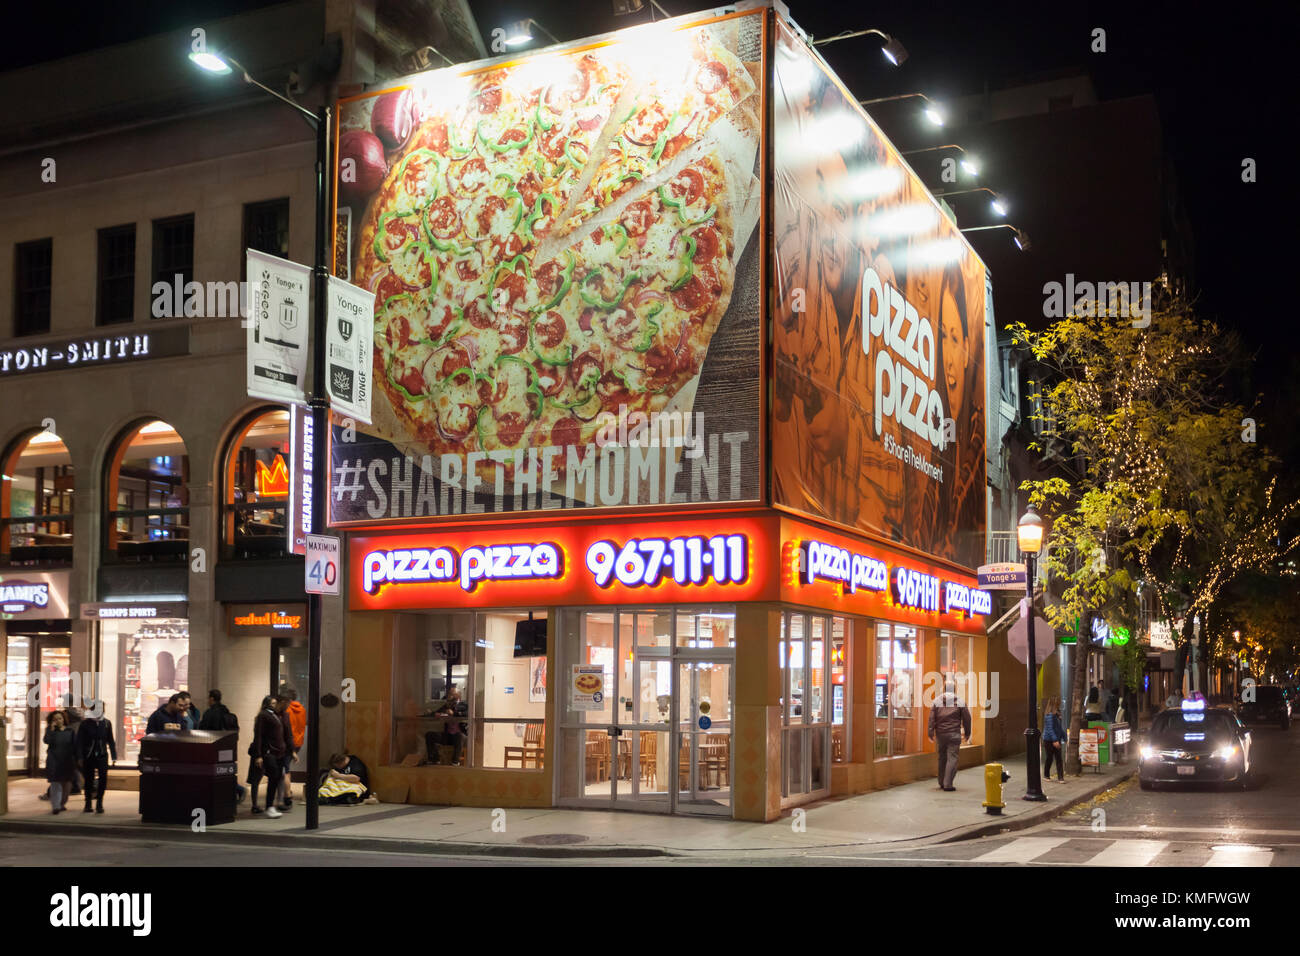 Toronto, Canada - oct 19, 2017: el canadiense de franquicia de comida rápida restaurant pizza pizza en la ciudad de Toronto. pizza pizza restaurantes están situados principalmente Foto de stock